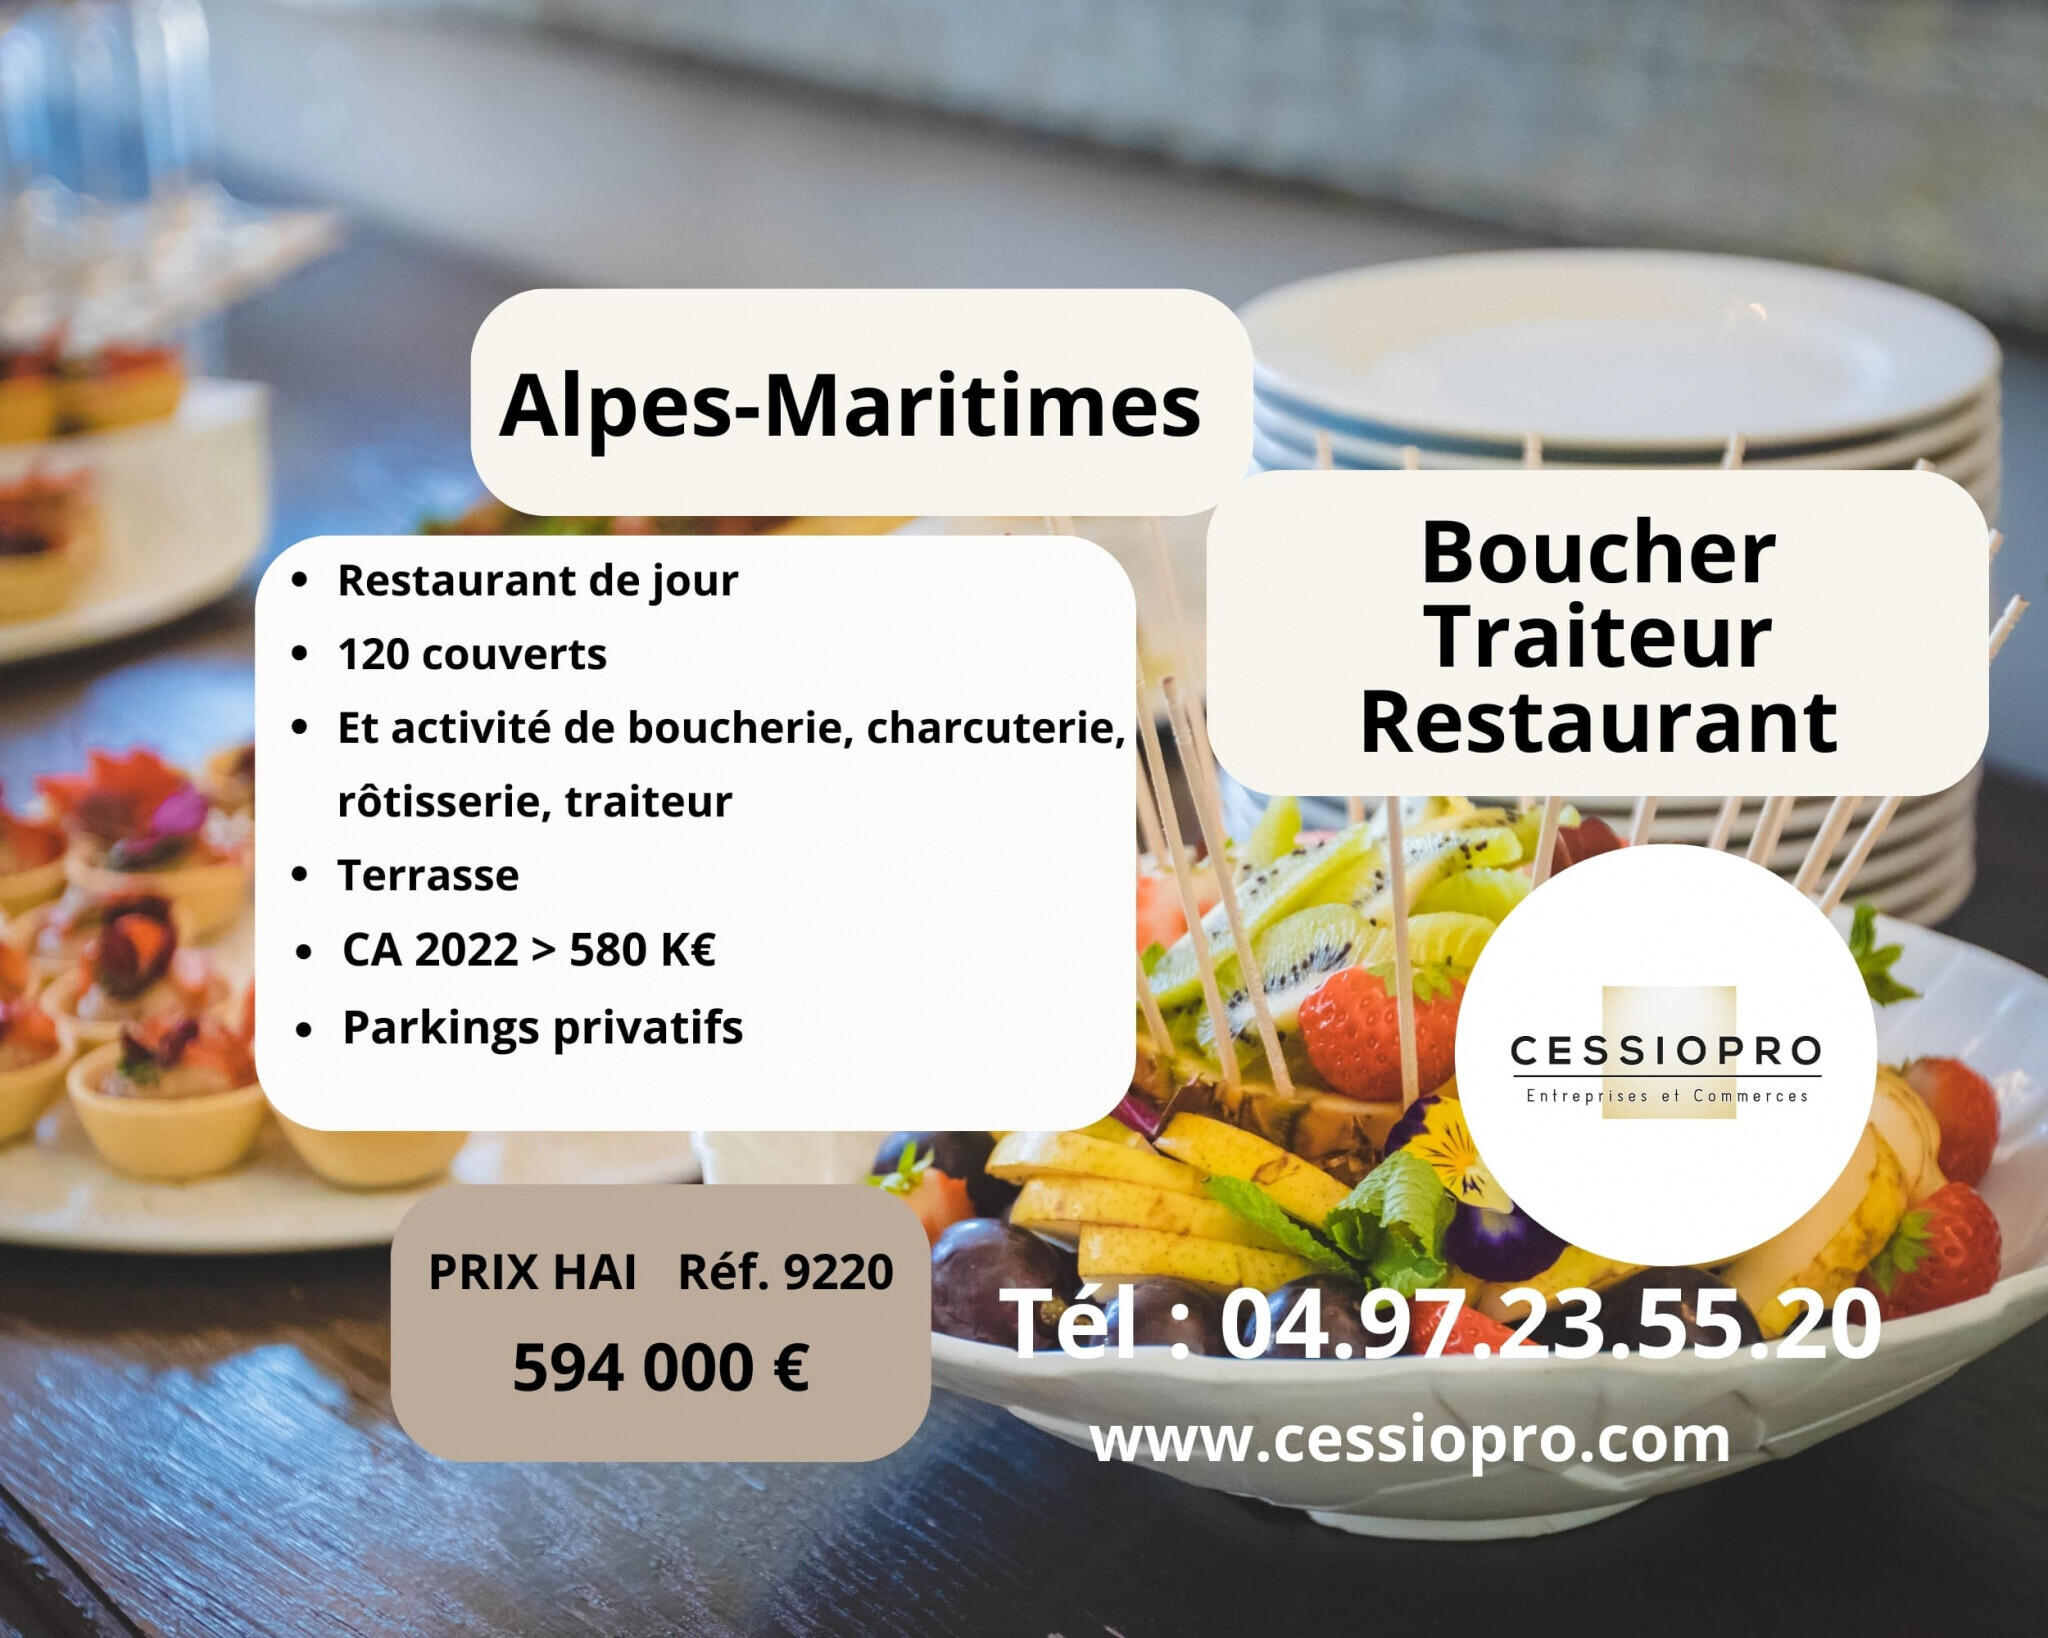 Vend boucherie traiteur restaurant terrasse Cannes